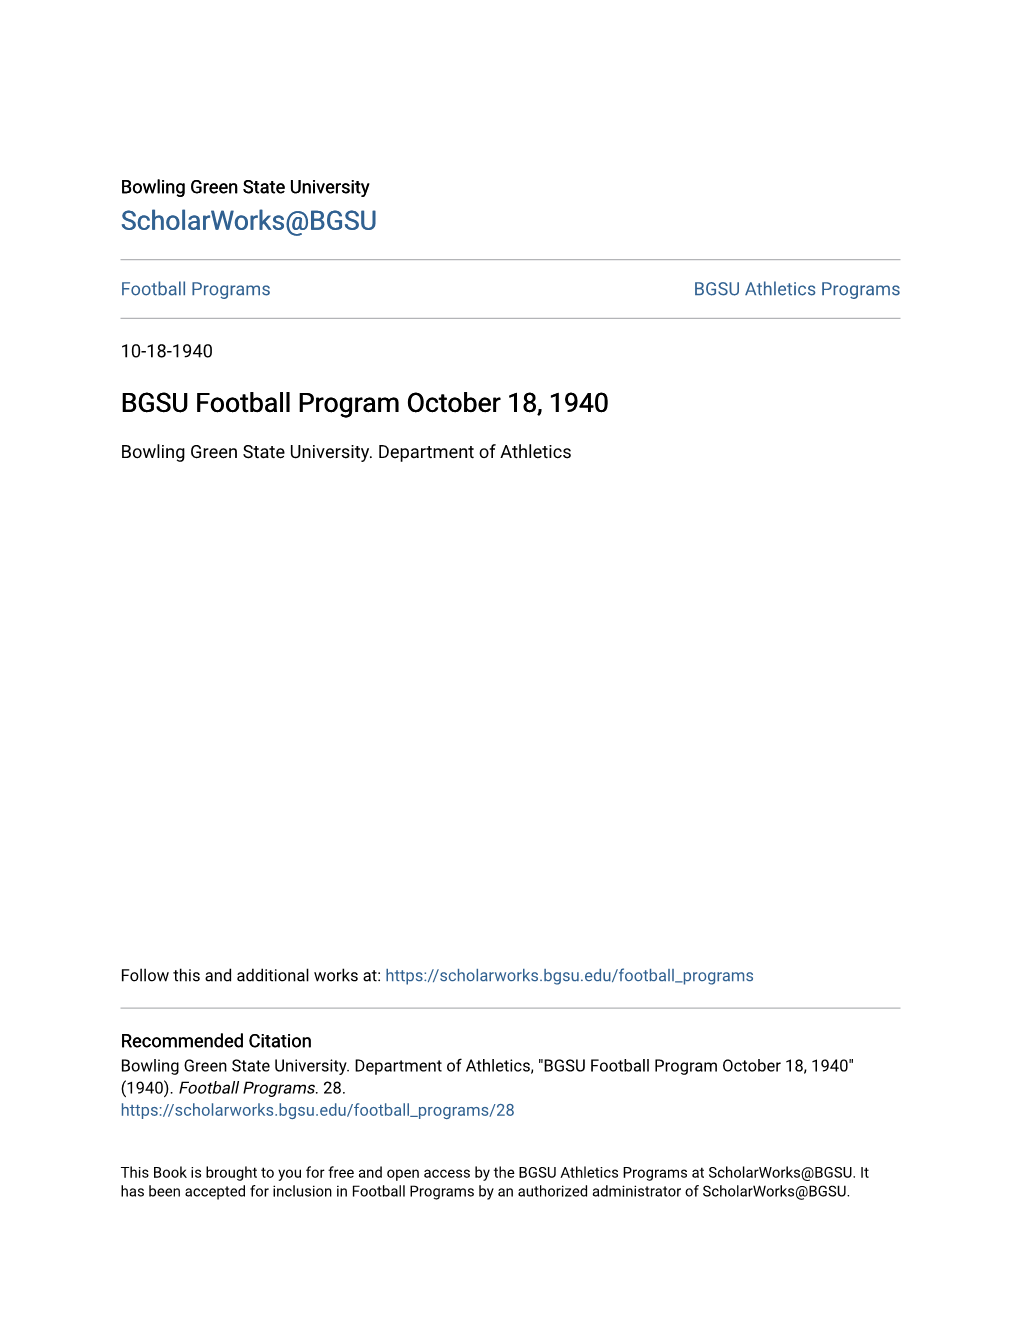 BGSU Football Program October 18, 1940